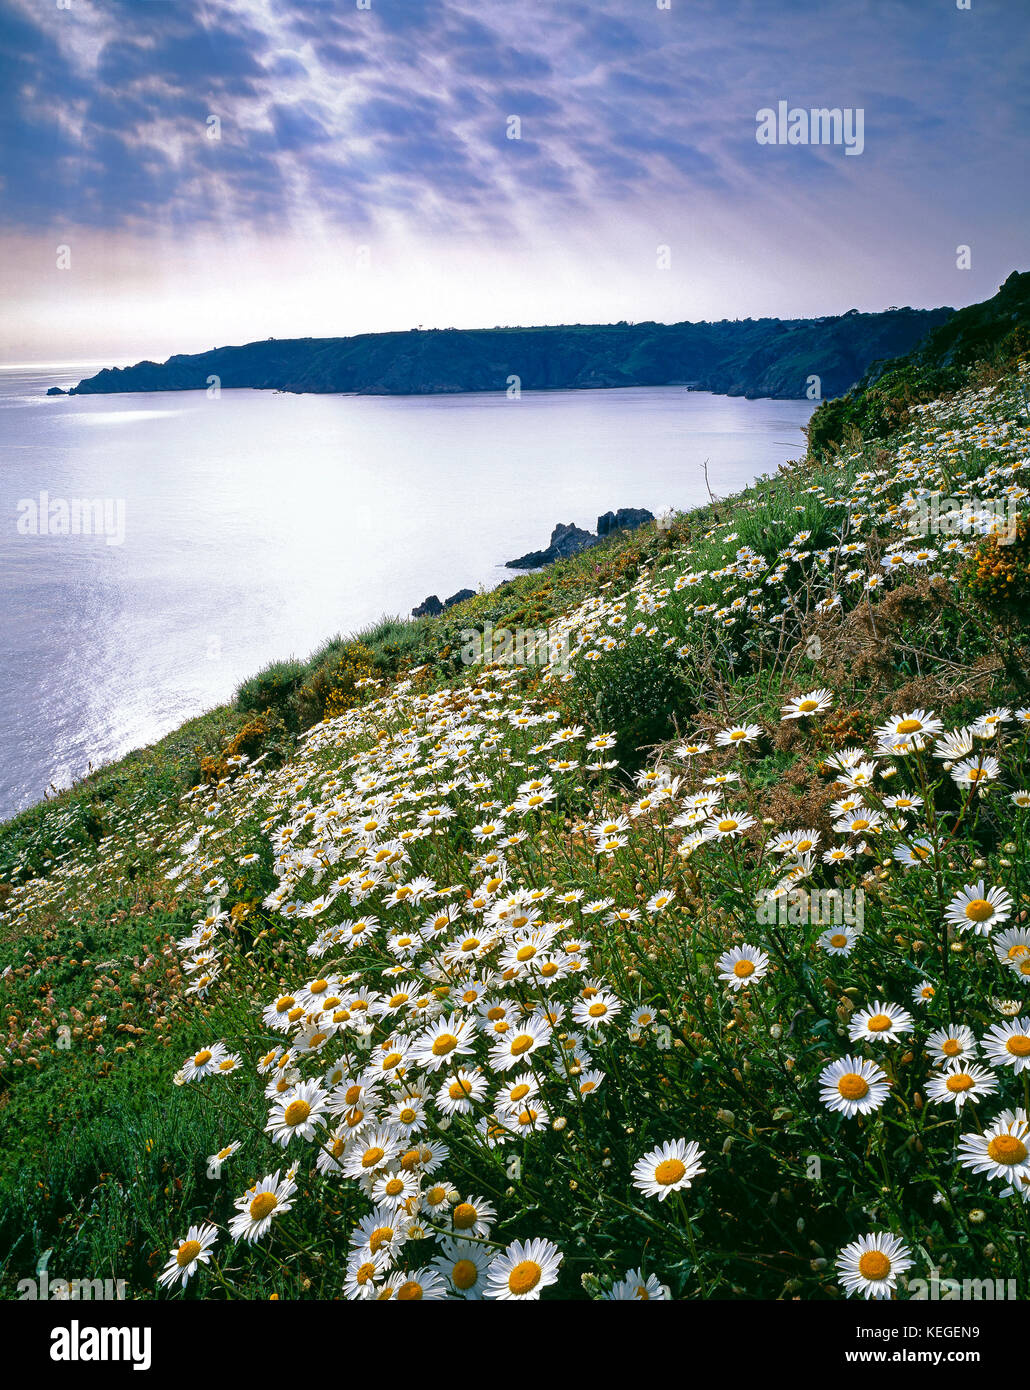 Islas del Canal. Guernsey. Paisajes de la costa. Flores silvestres en el acantilado. Foto de stock